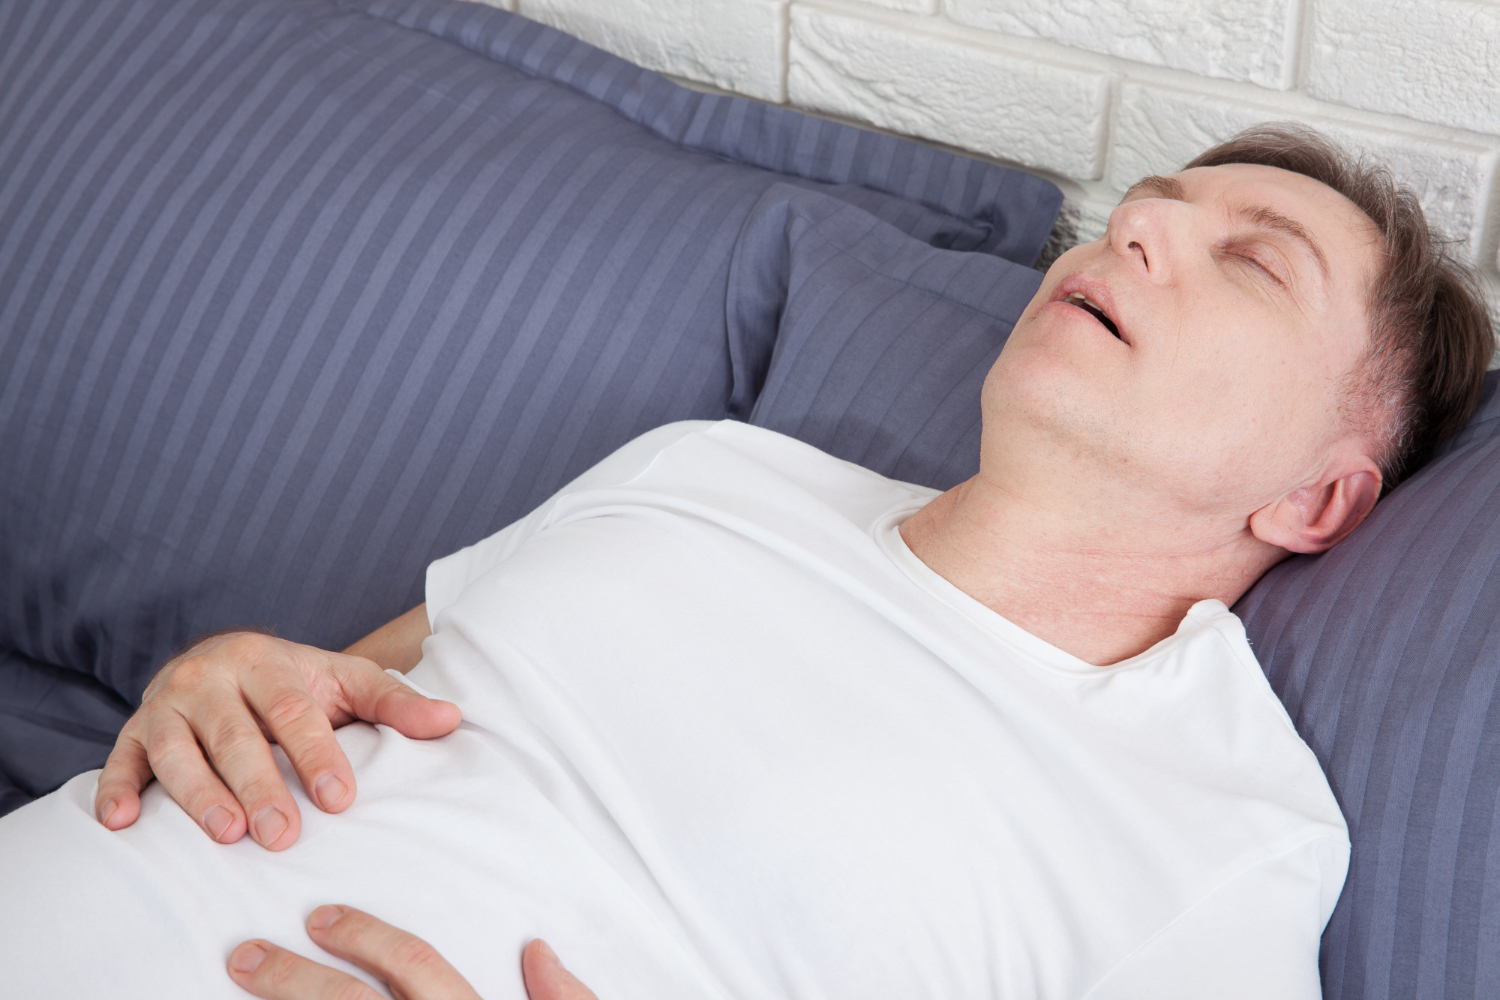  Alvás alatti légzés zavarok egyik oka az orrpolip.